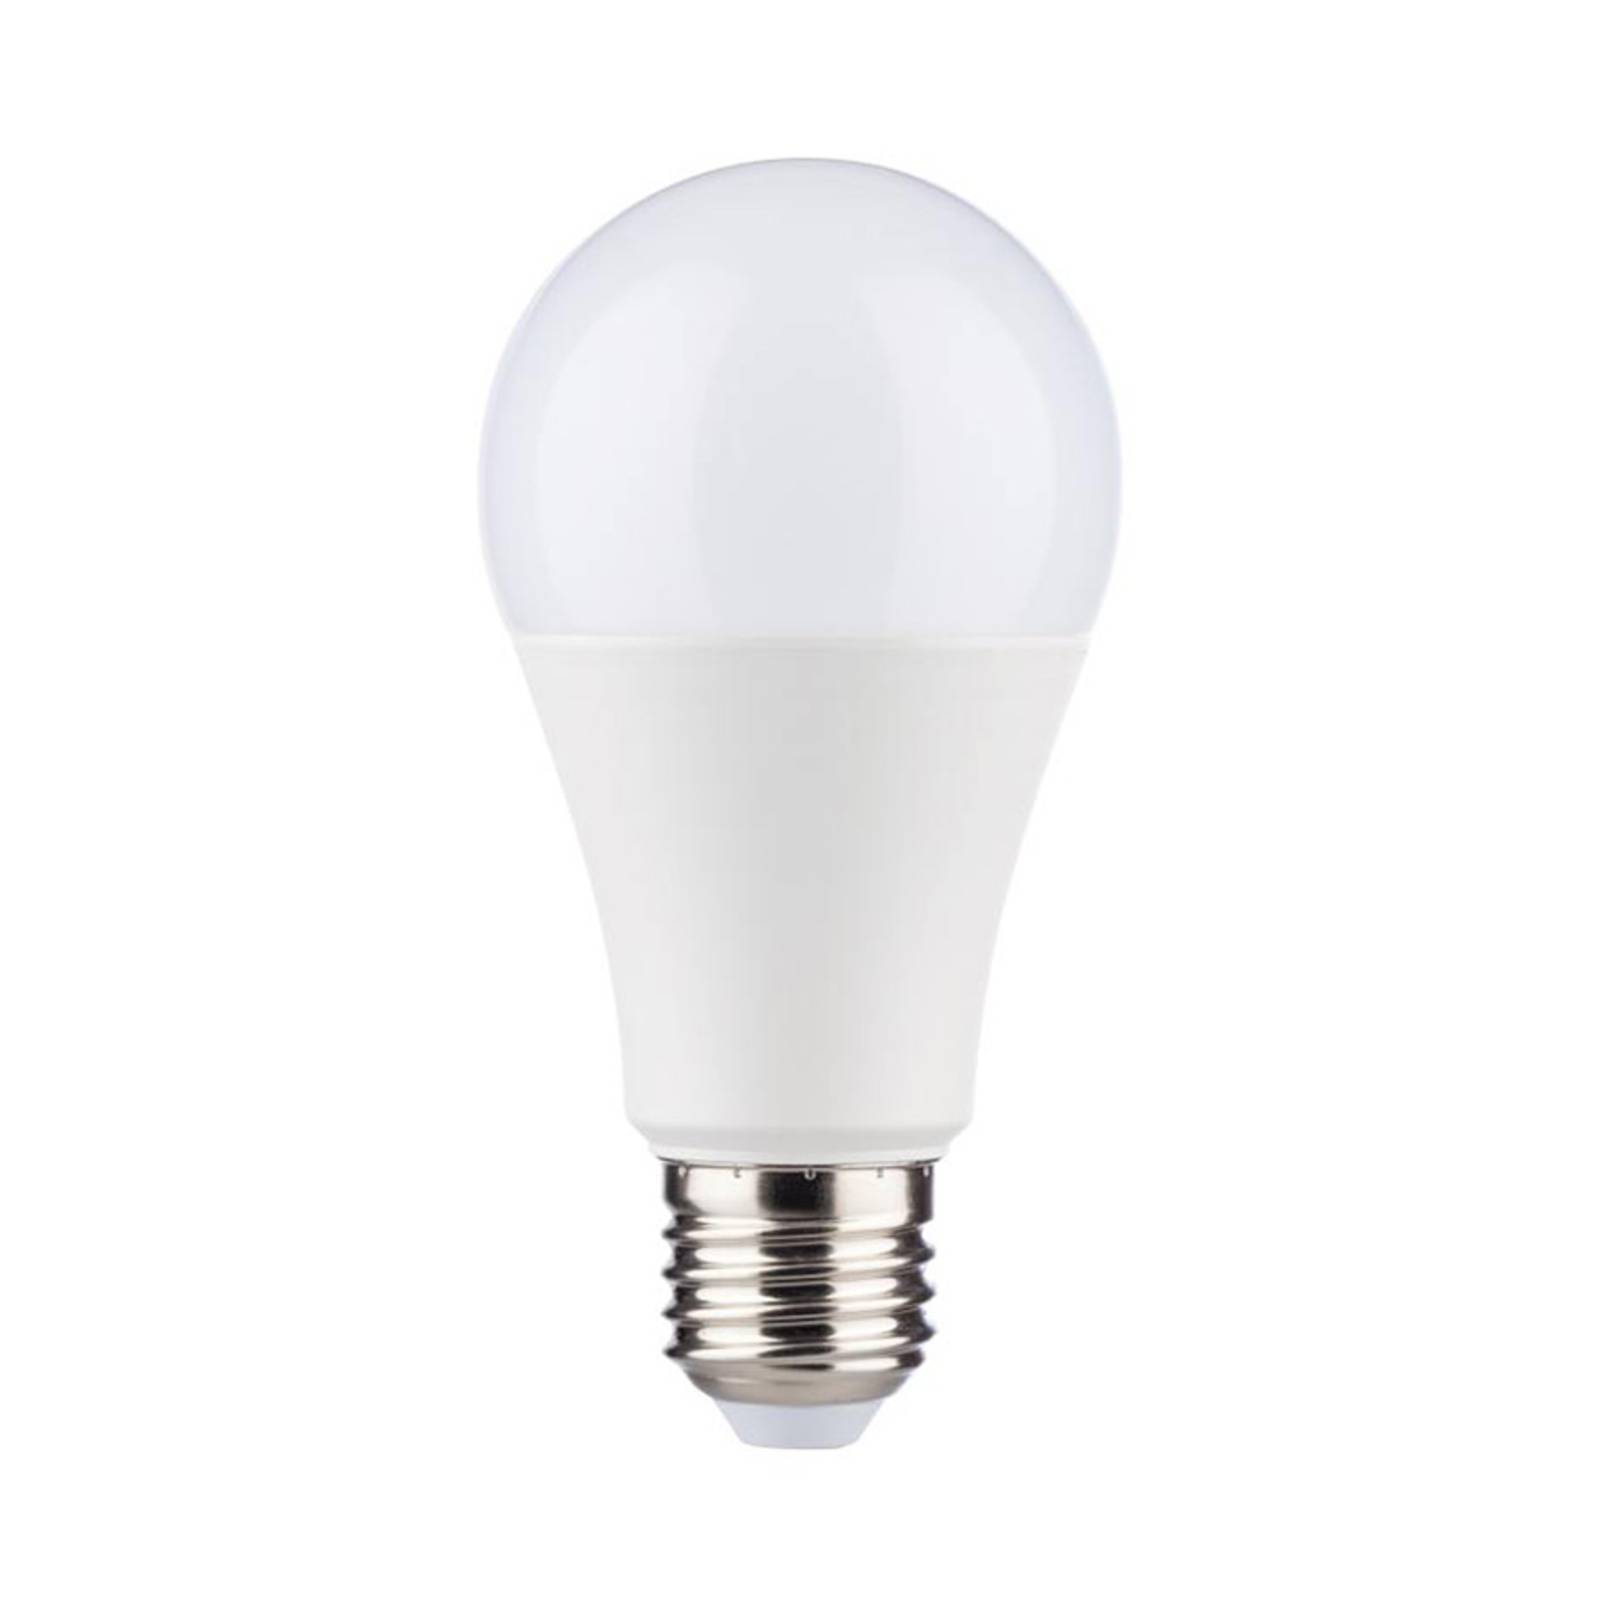 LED lámpa E27 12W 2 700 K opál 4 db-os csomag